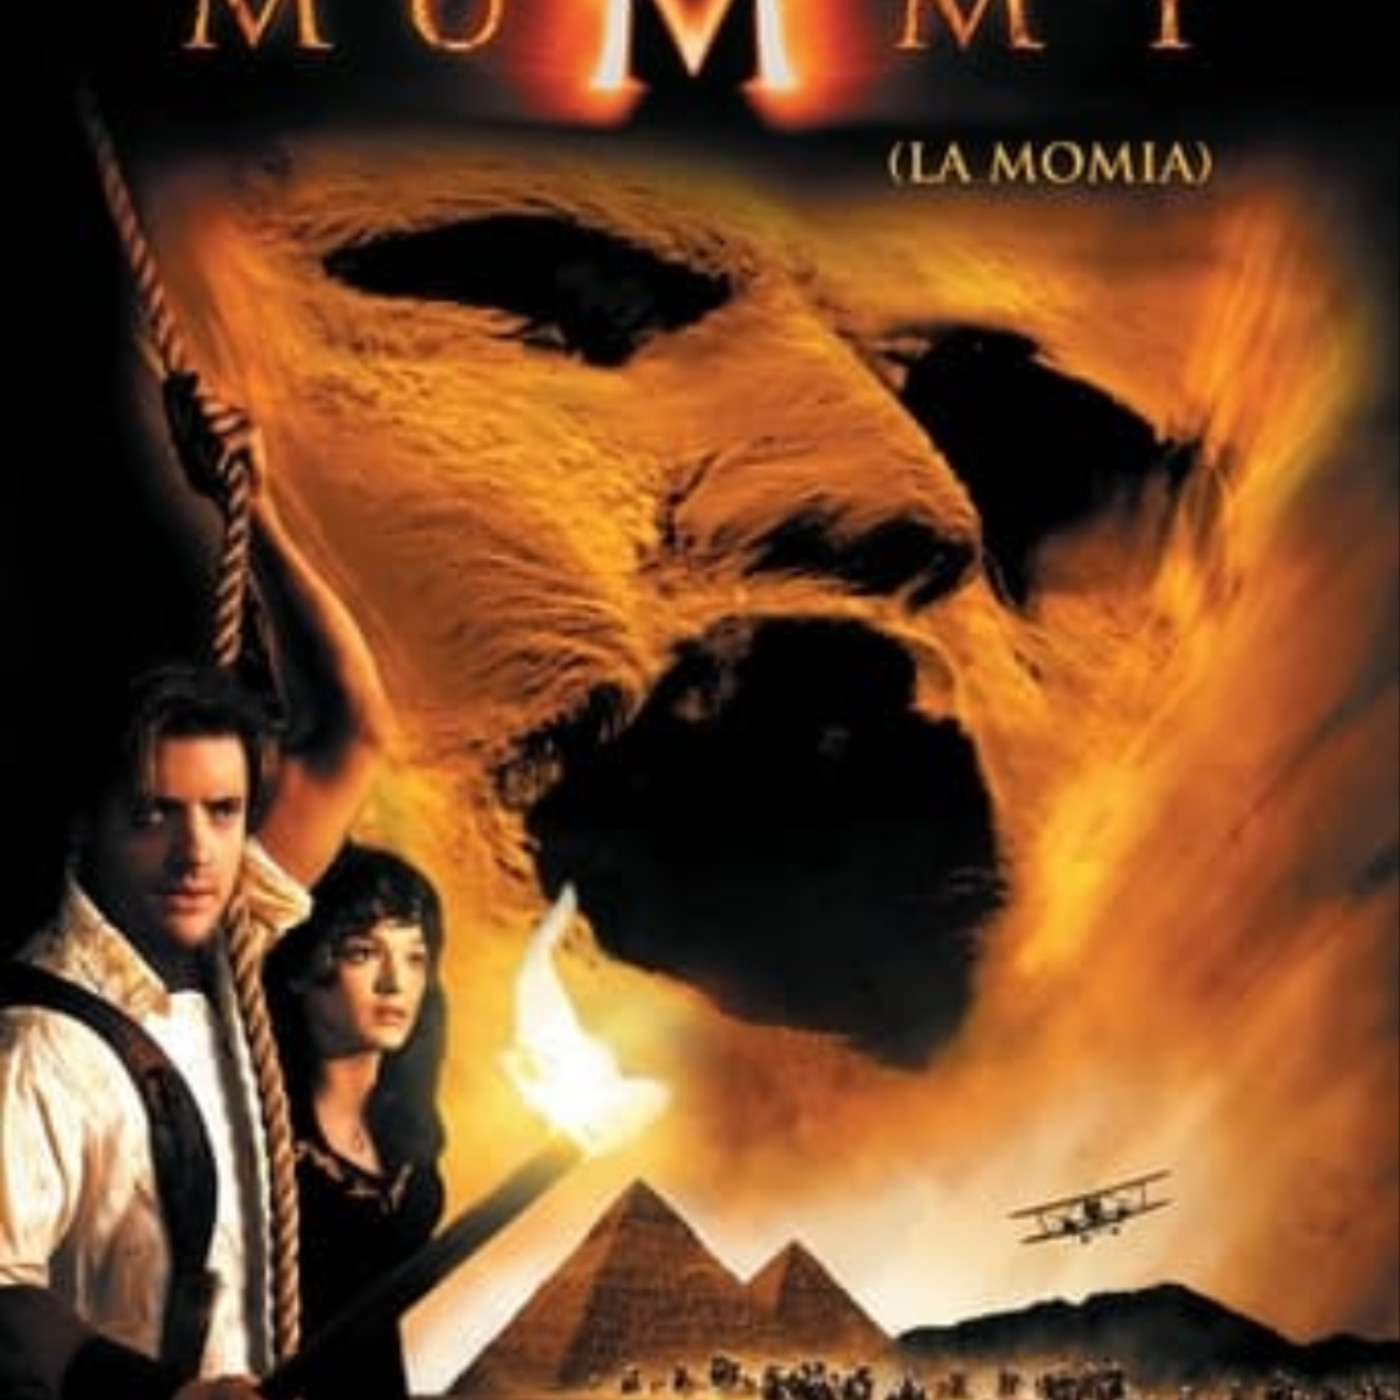 Ver La momia 1999 online gratis en español y latino | Podcast on SoundOn